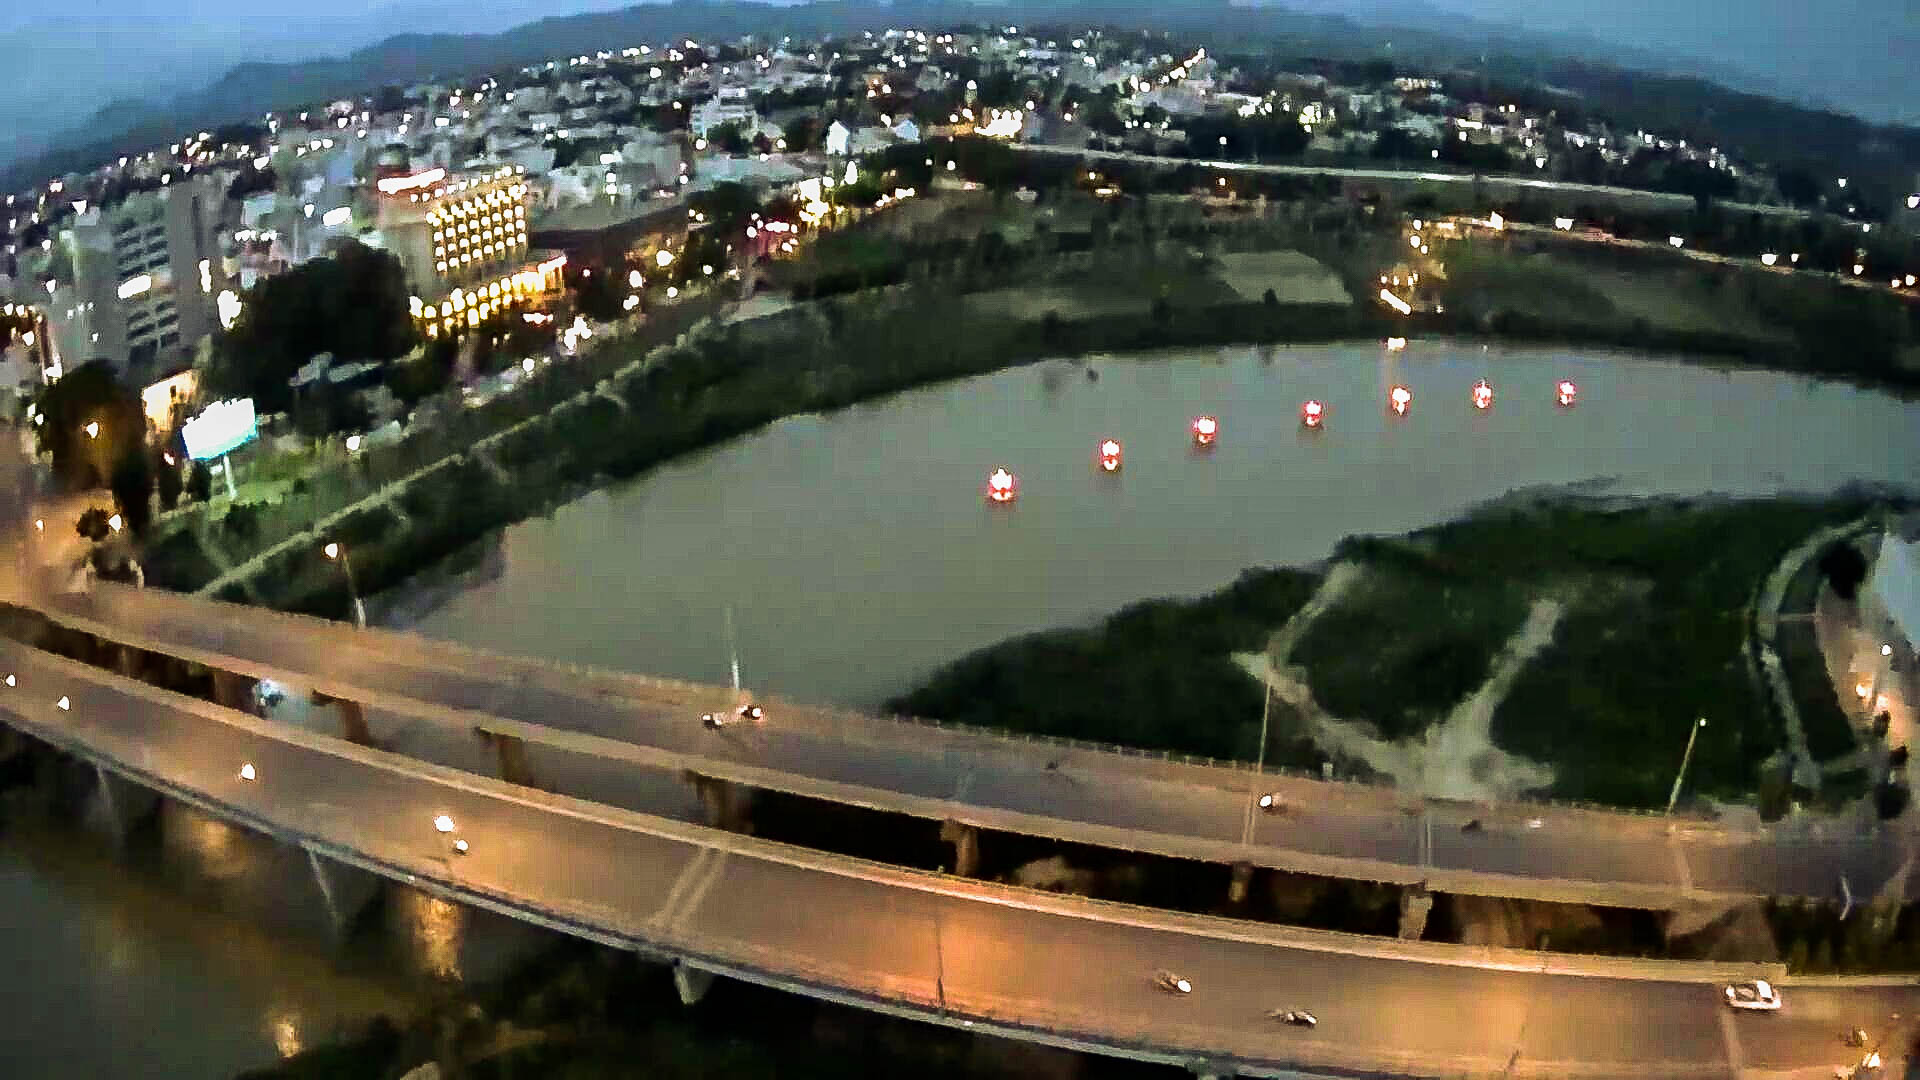 Hình ảnh toàn cảnh thành phố Kon Tum nhìn trên cao khi về đêm khi tp lên đèn